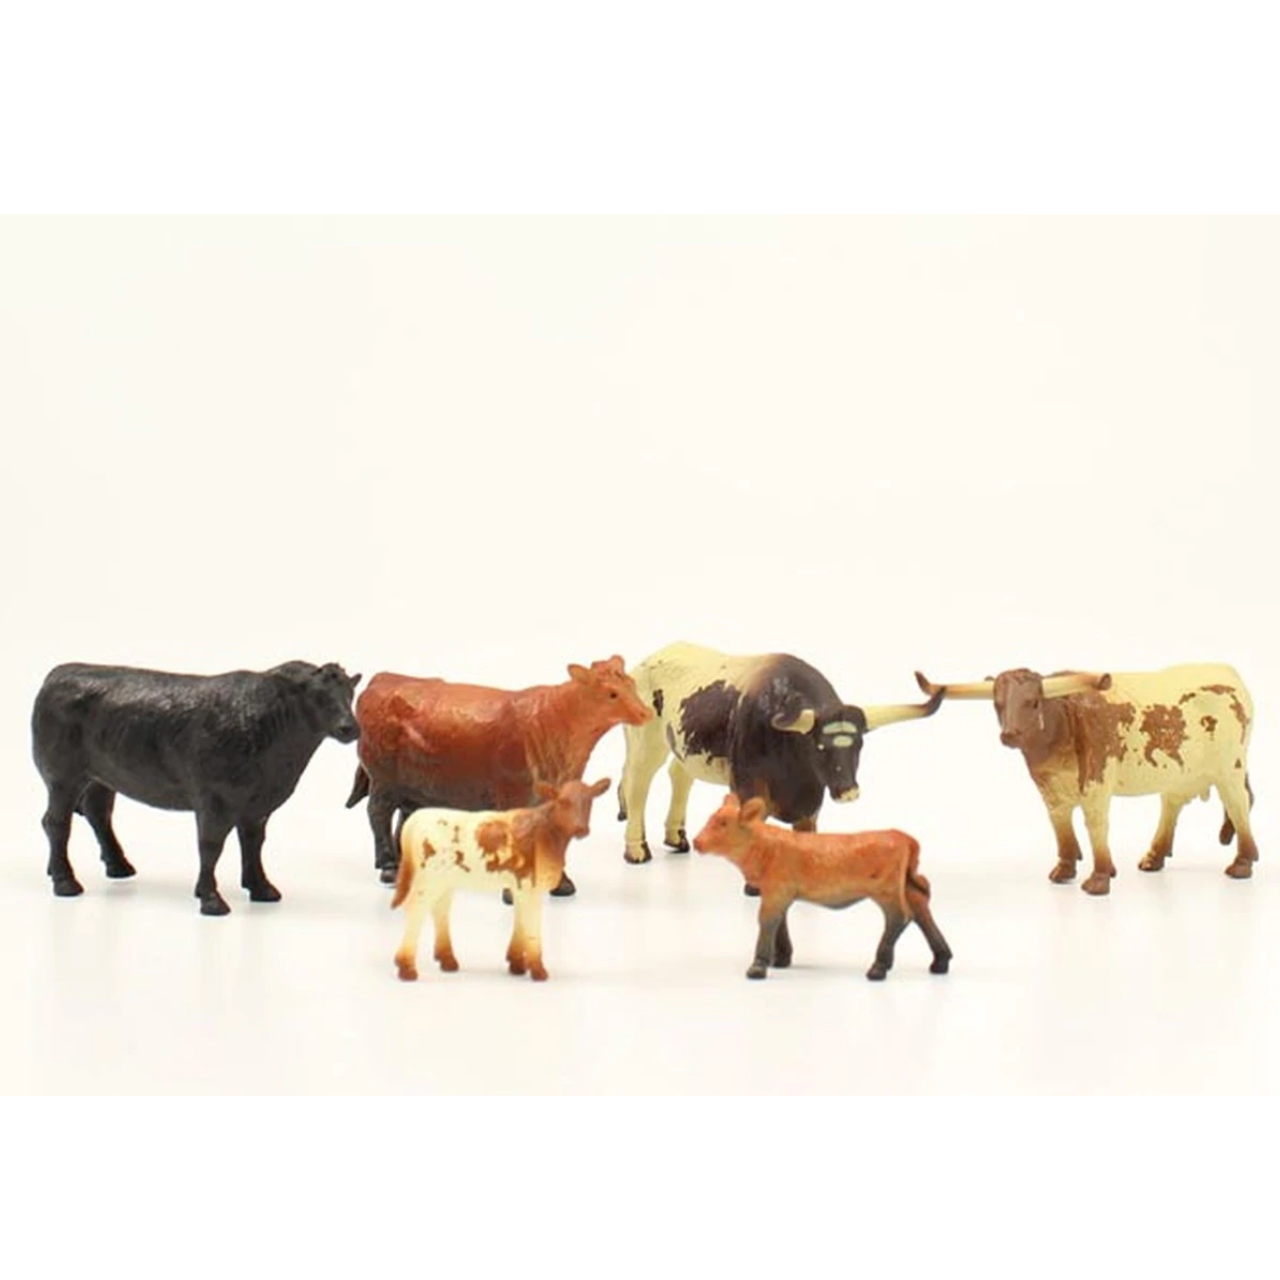 Farm Animals Toy Set on a White Background